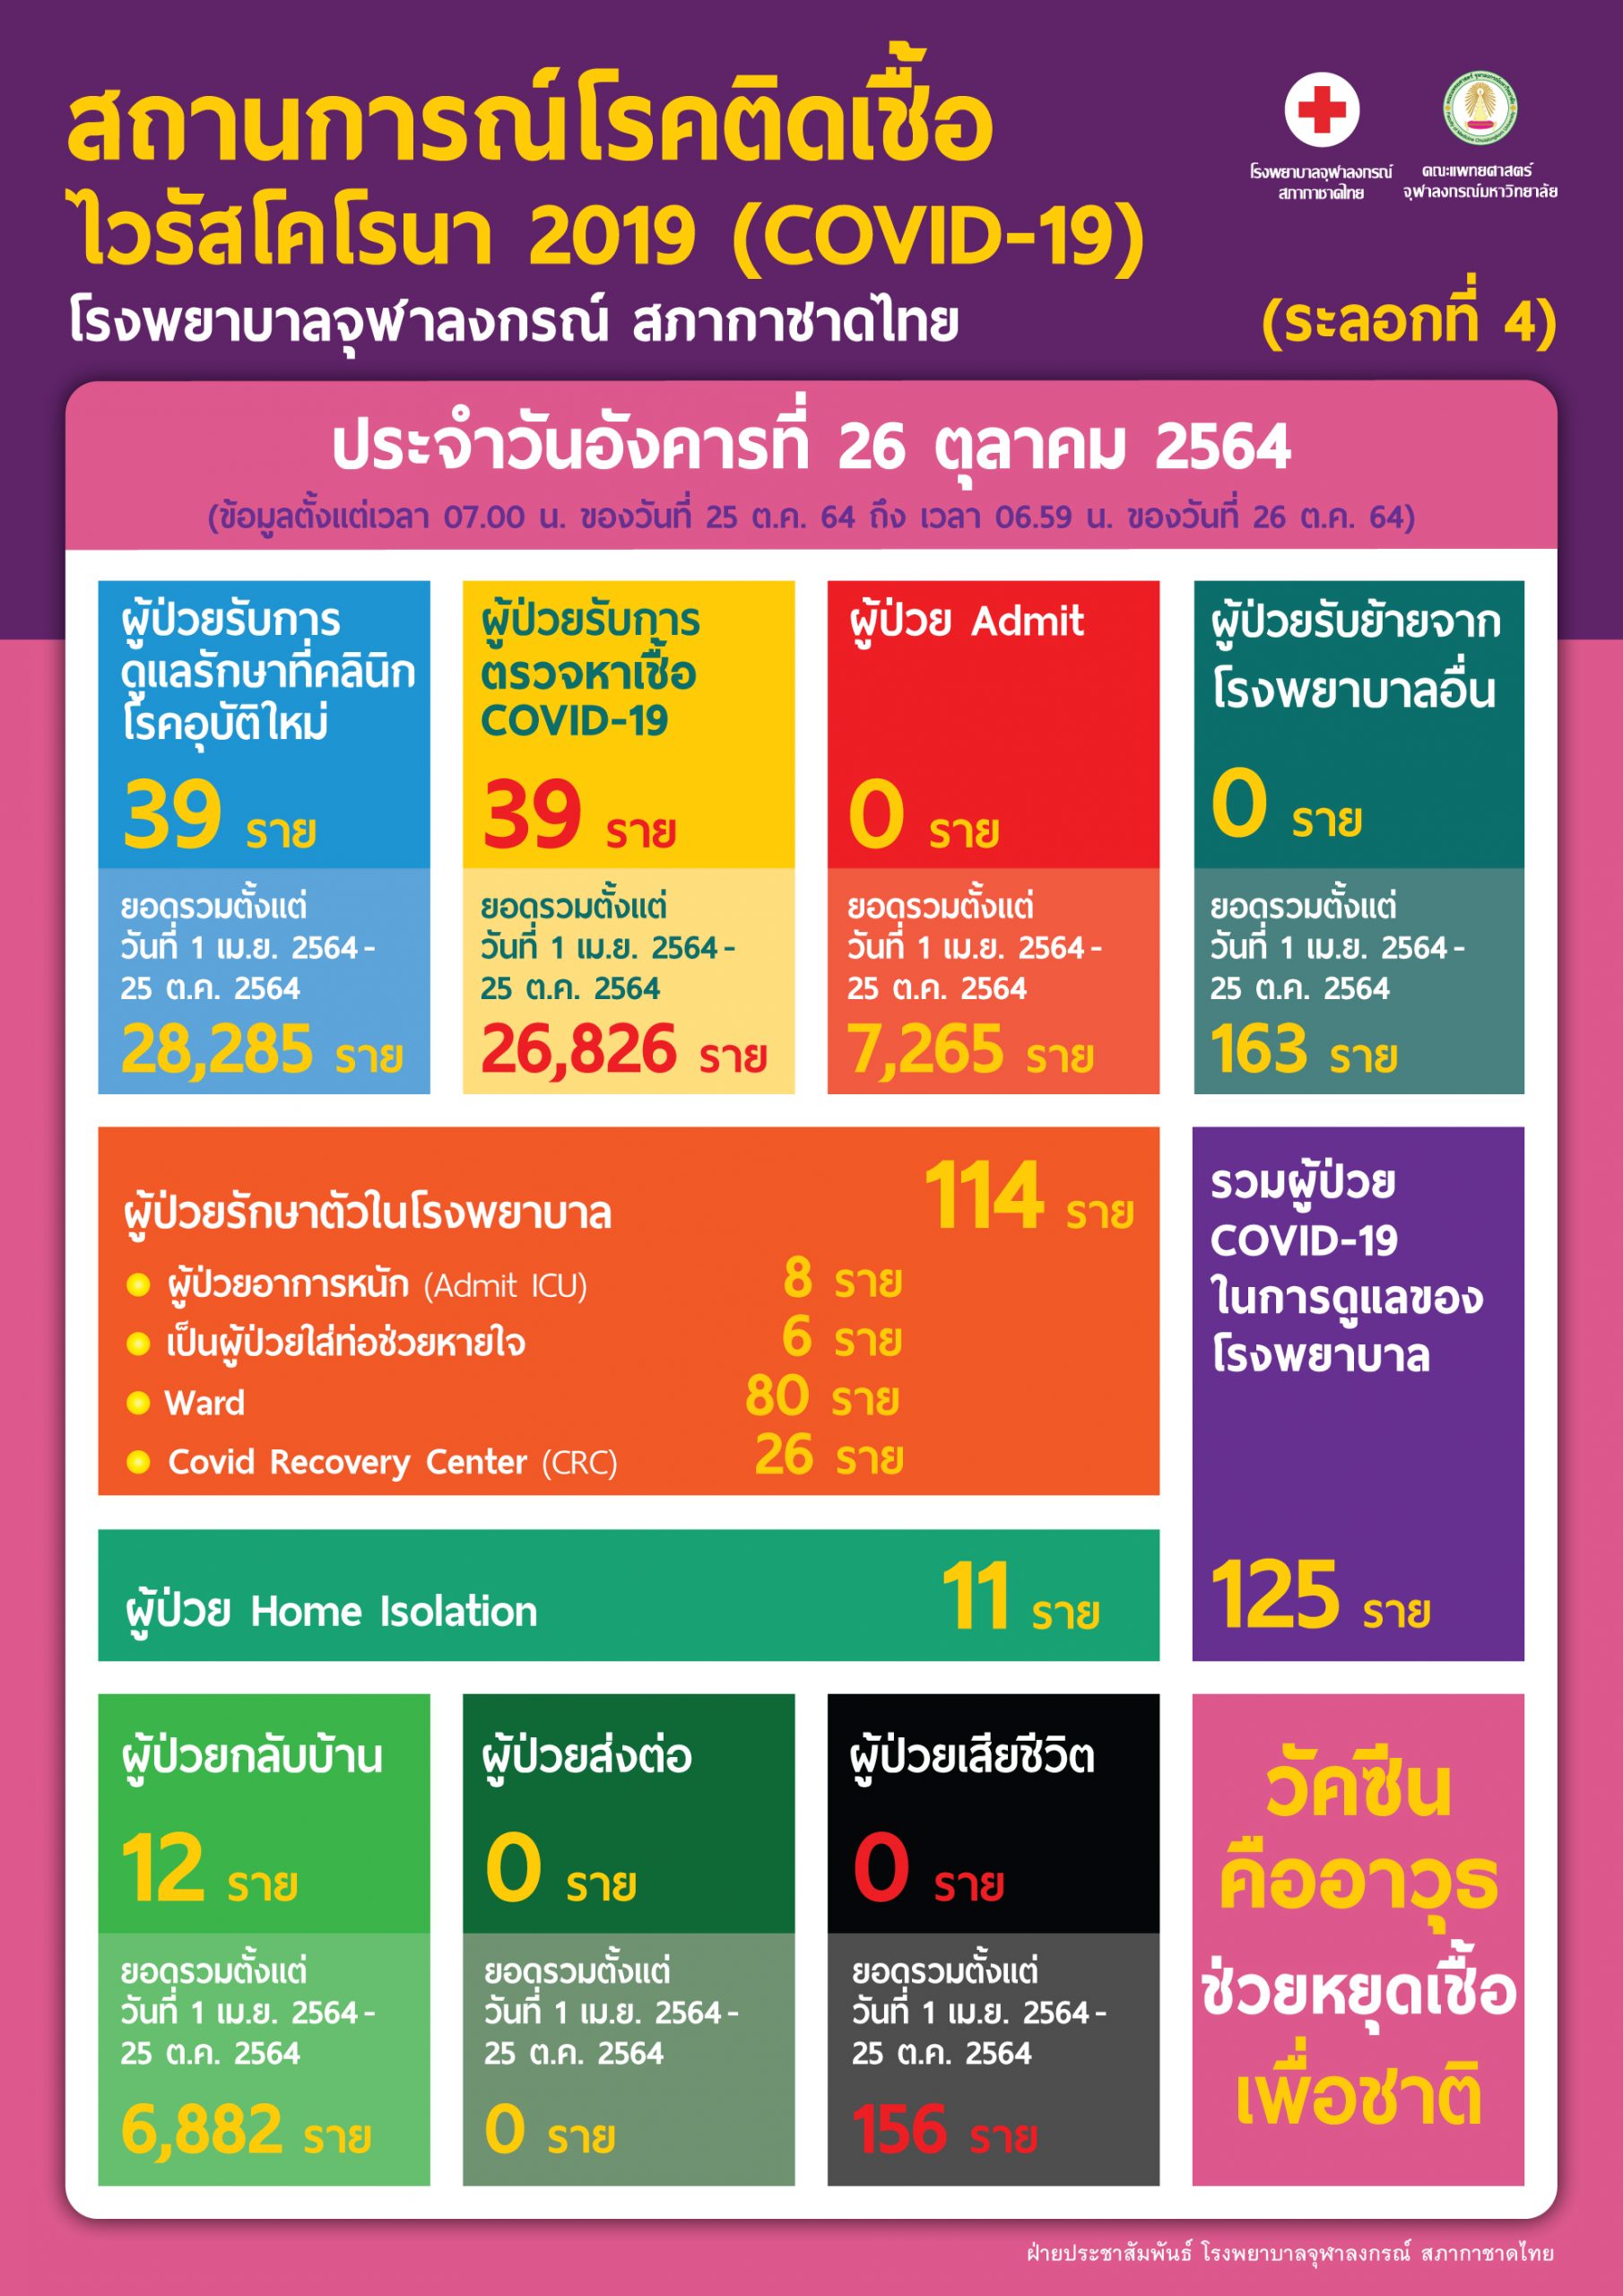 สถานการณ์โรคติดเชื้อไวรัสโคโรนา 2019 (COVID-19)  (ระลอกที่ 4) โรงพยาบาลจุฬาลงกรณ์ สภากาชาดไทย ประจำวันอังคารที่ 26 ตุลาคม 2564